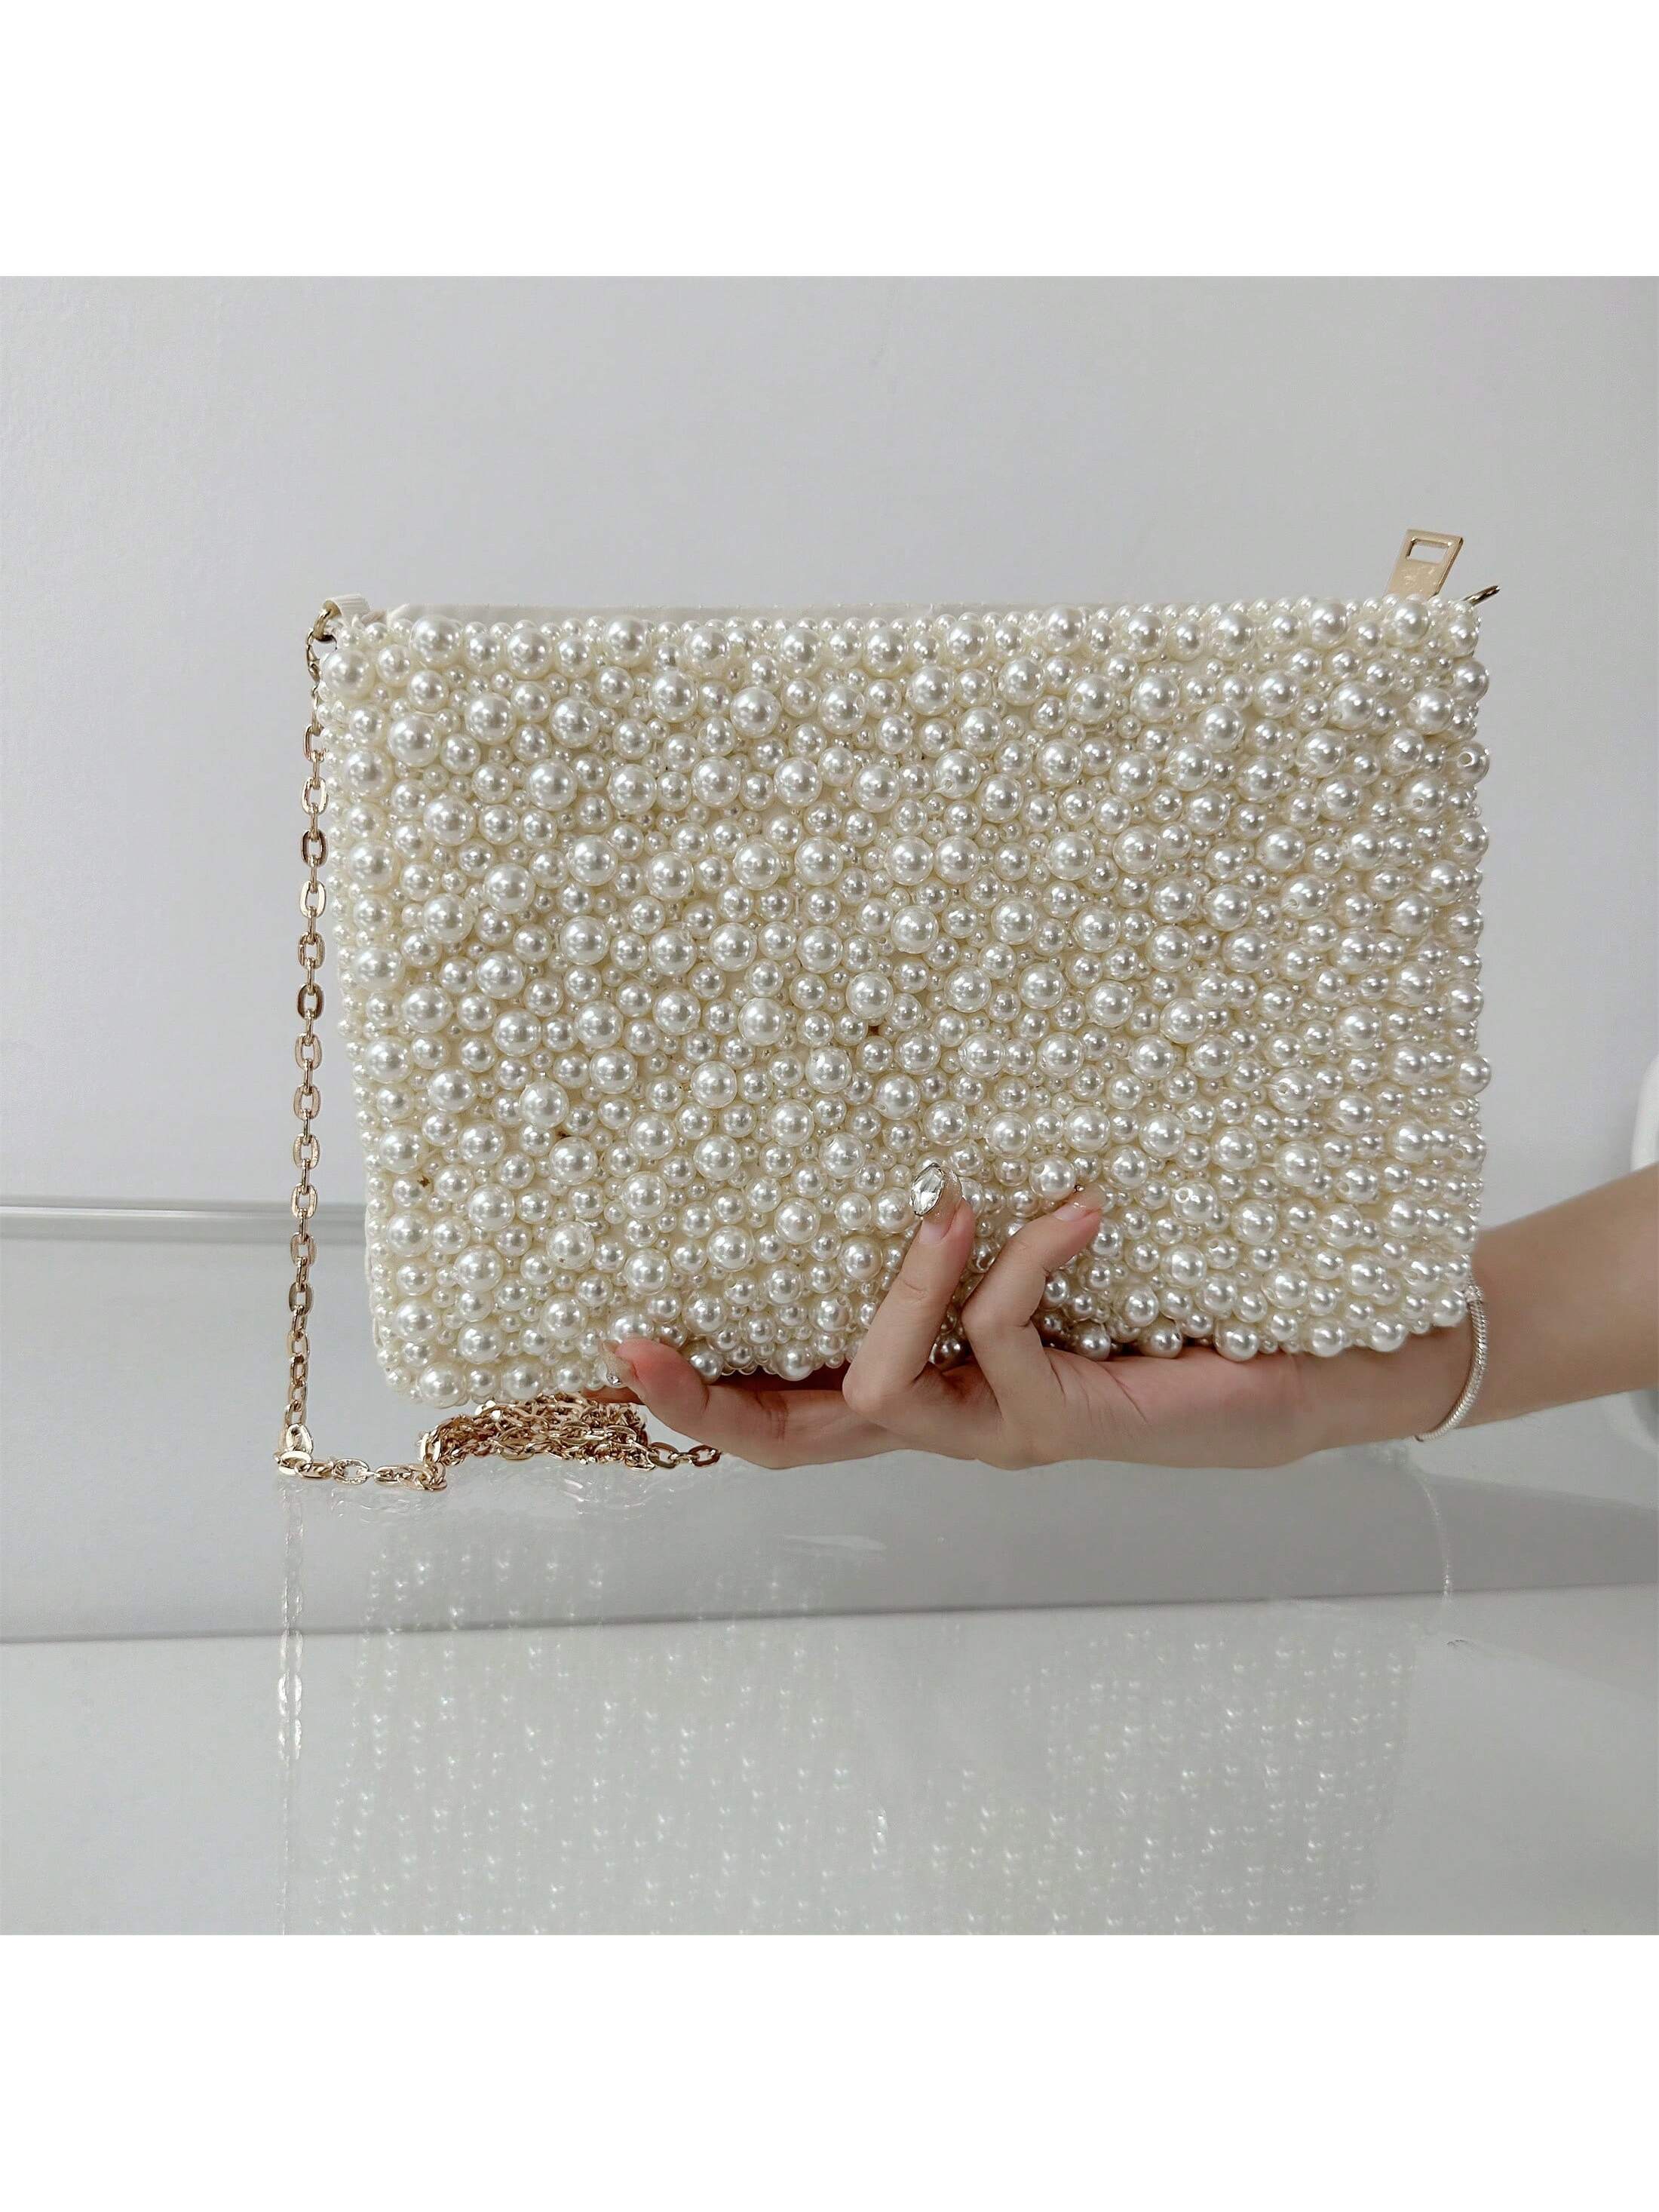 Трансграничная модная диагональная сумка через плечо ручной работы с жемчужными шипами, белый